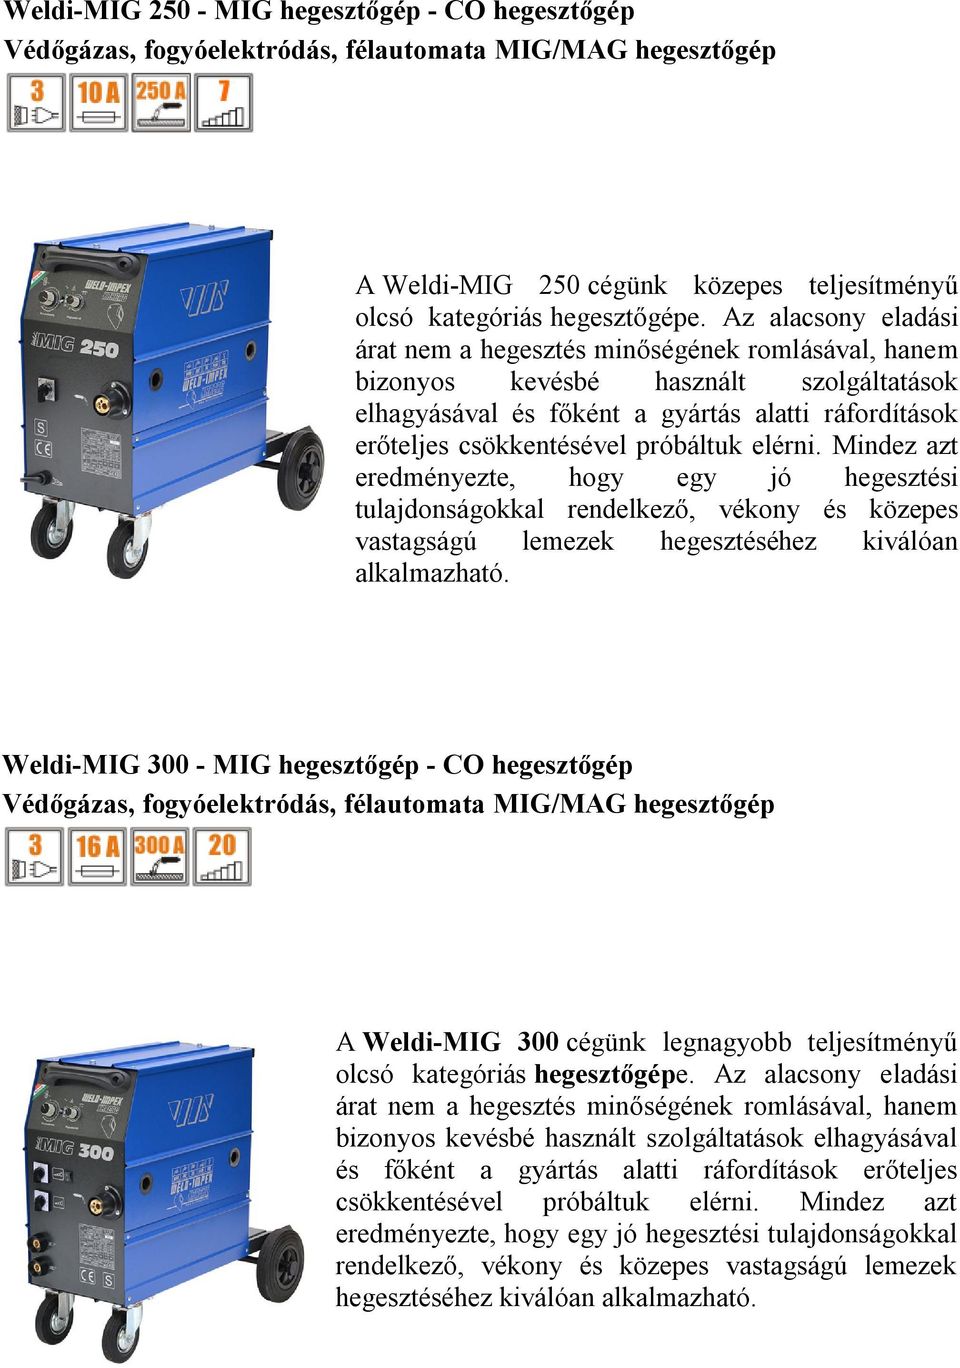 Weldi-MIG termékcsalád MIG hegesztőgépek CO hegesztőgépek - PDF Free  Download